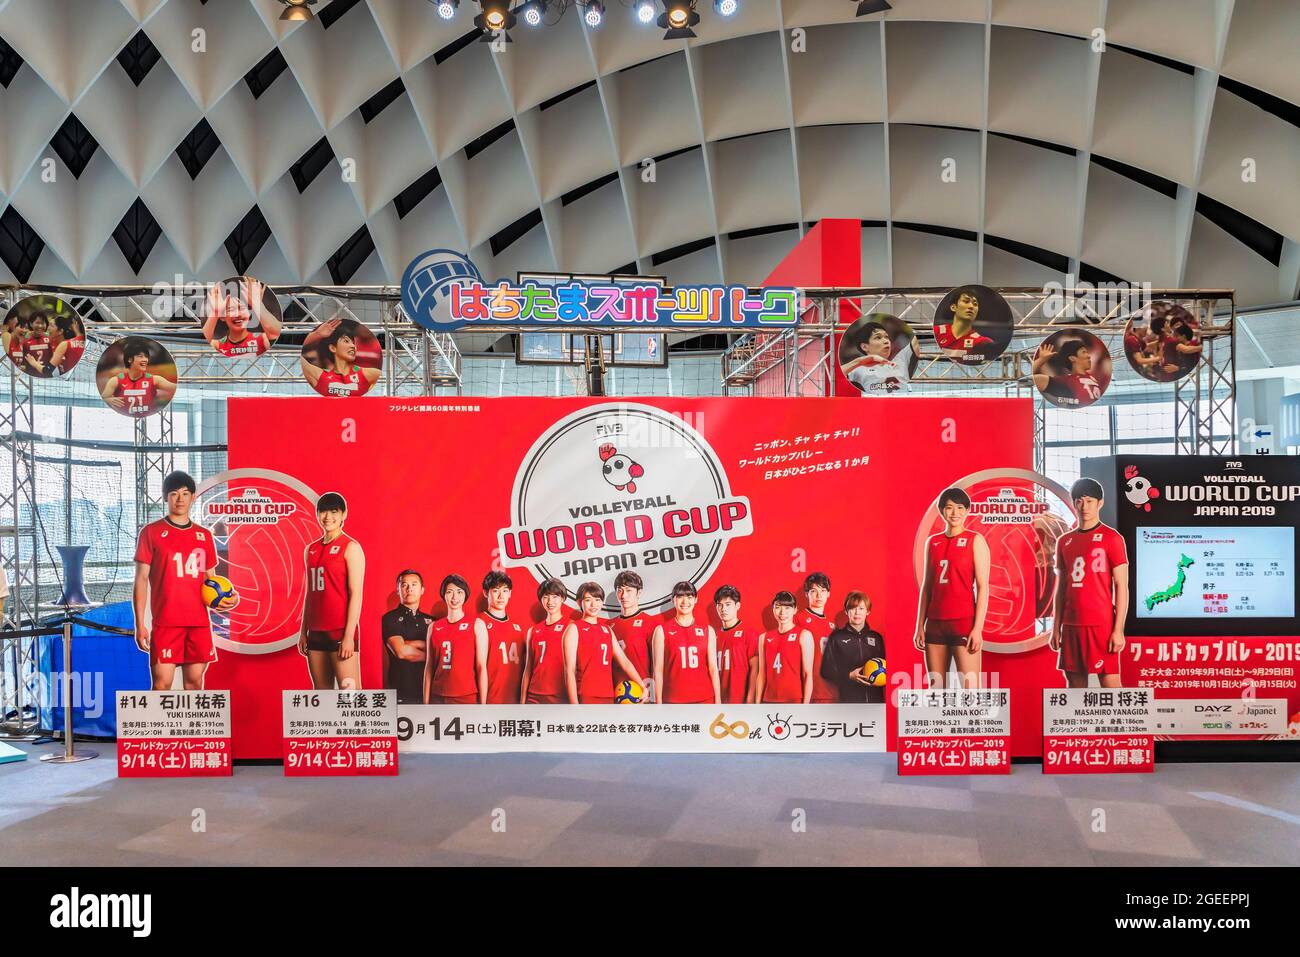 tokio, japan - juli 09 2019: Standdee und Tafel aus Pappe, auf der die japanischen Volleyballsportler während des FIVB Volleyball World Cup Japan 2019 abgebildet sind Stockfoto